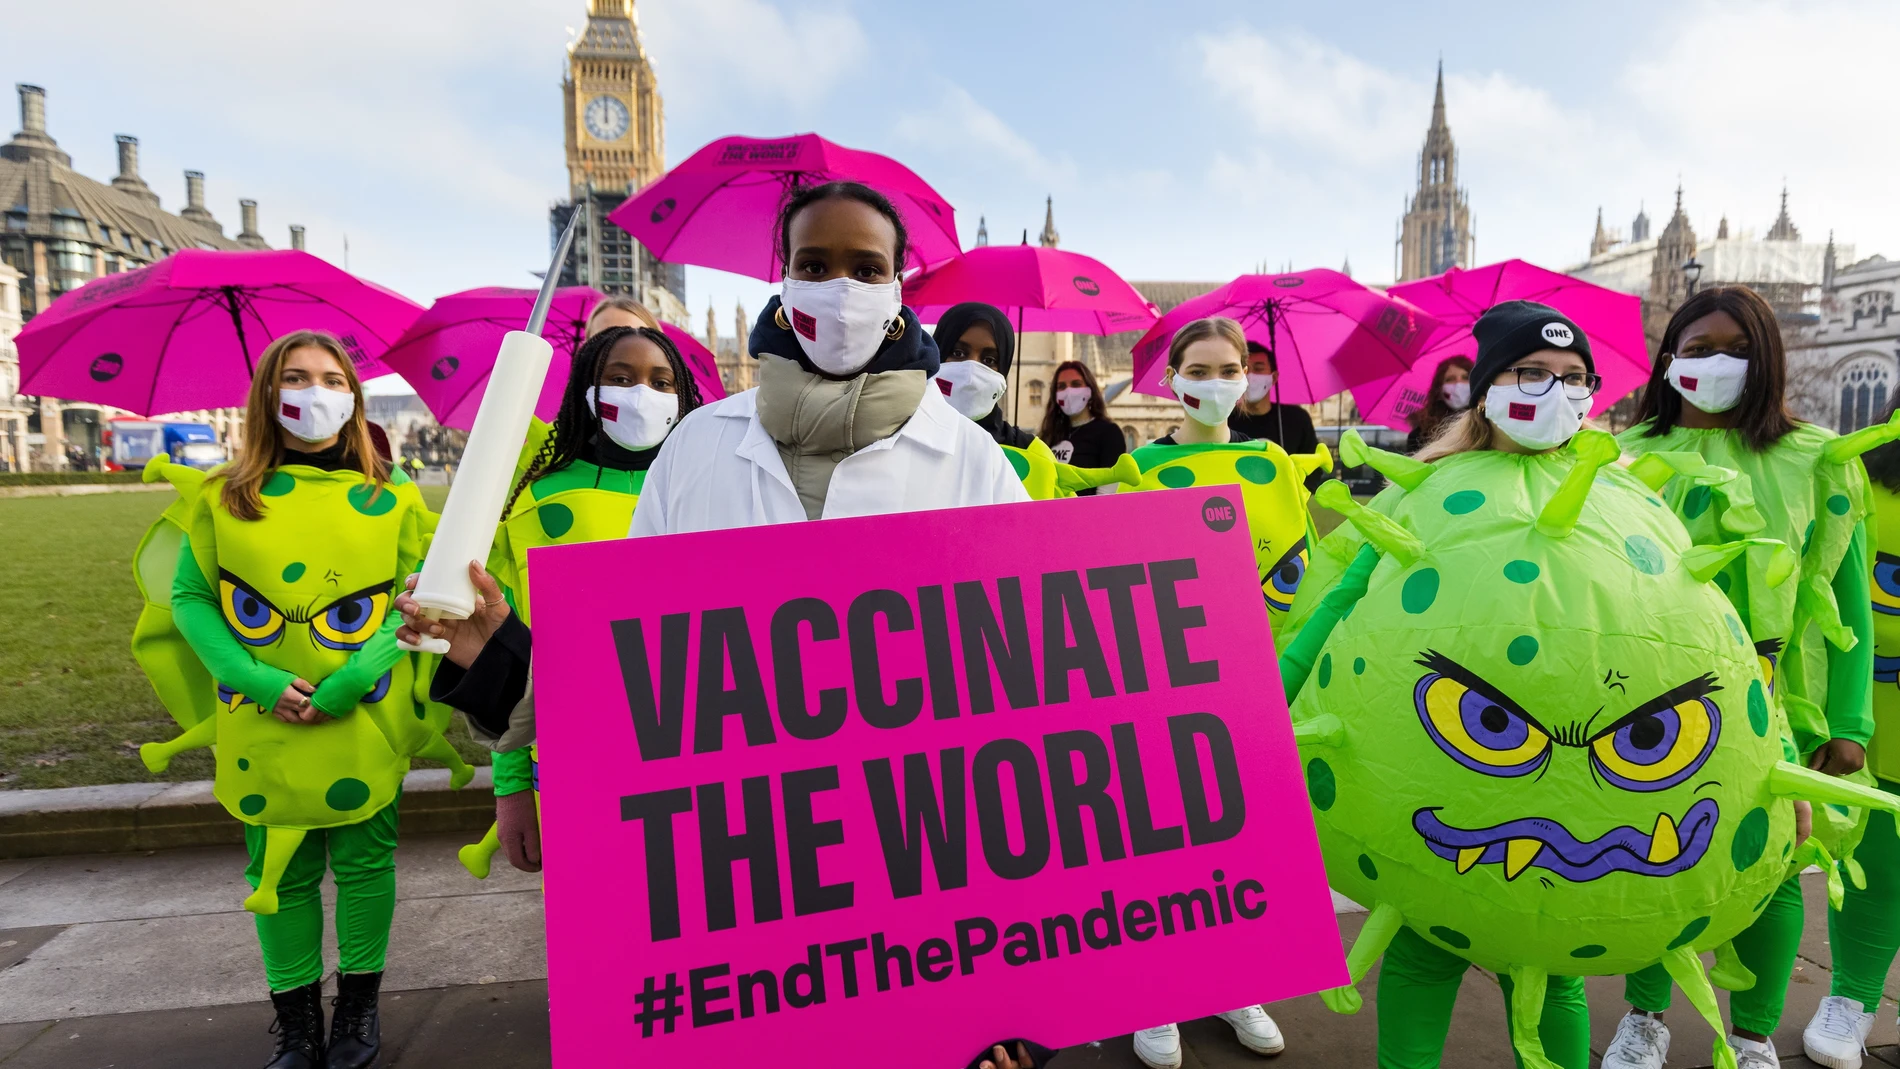 Un grupo de activistas pide en Londres la vacunación masiva en el Tercer Mundo